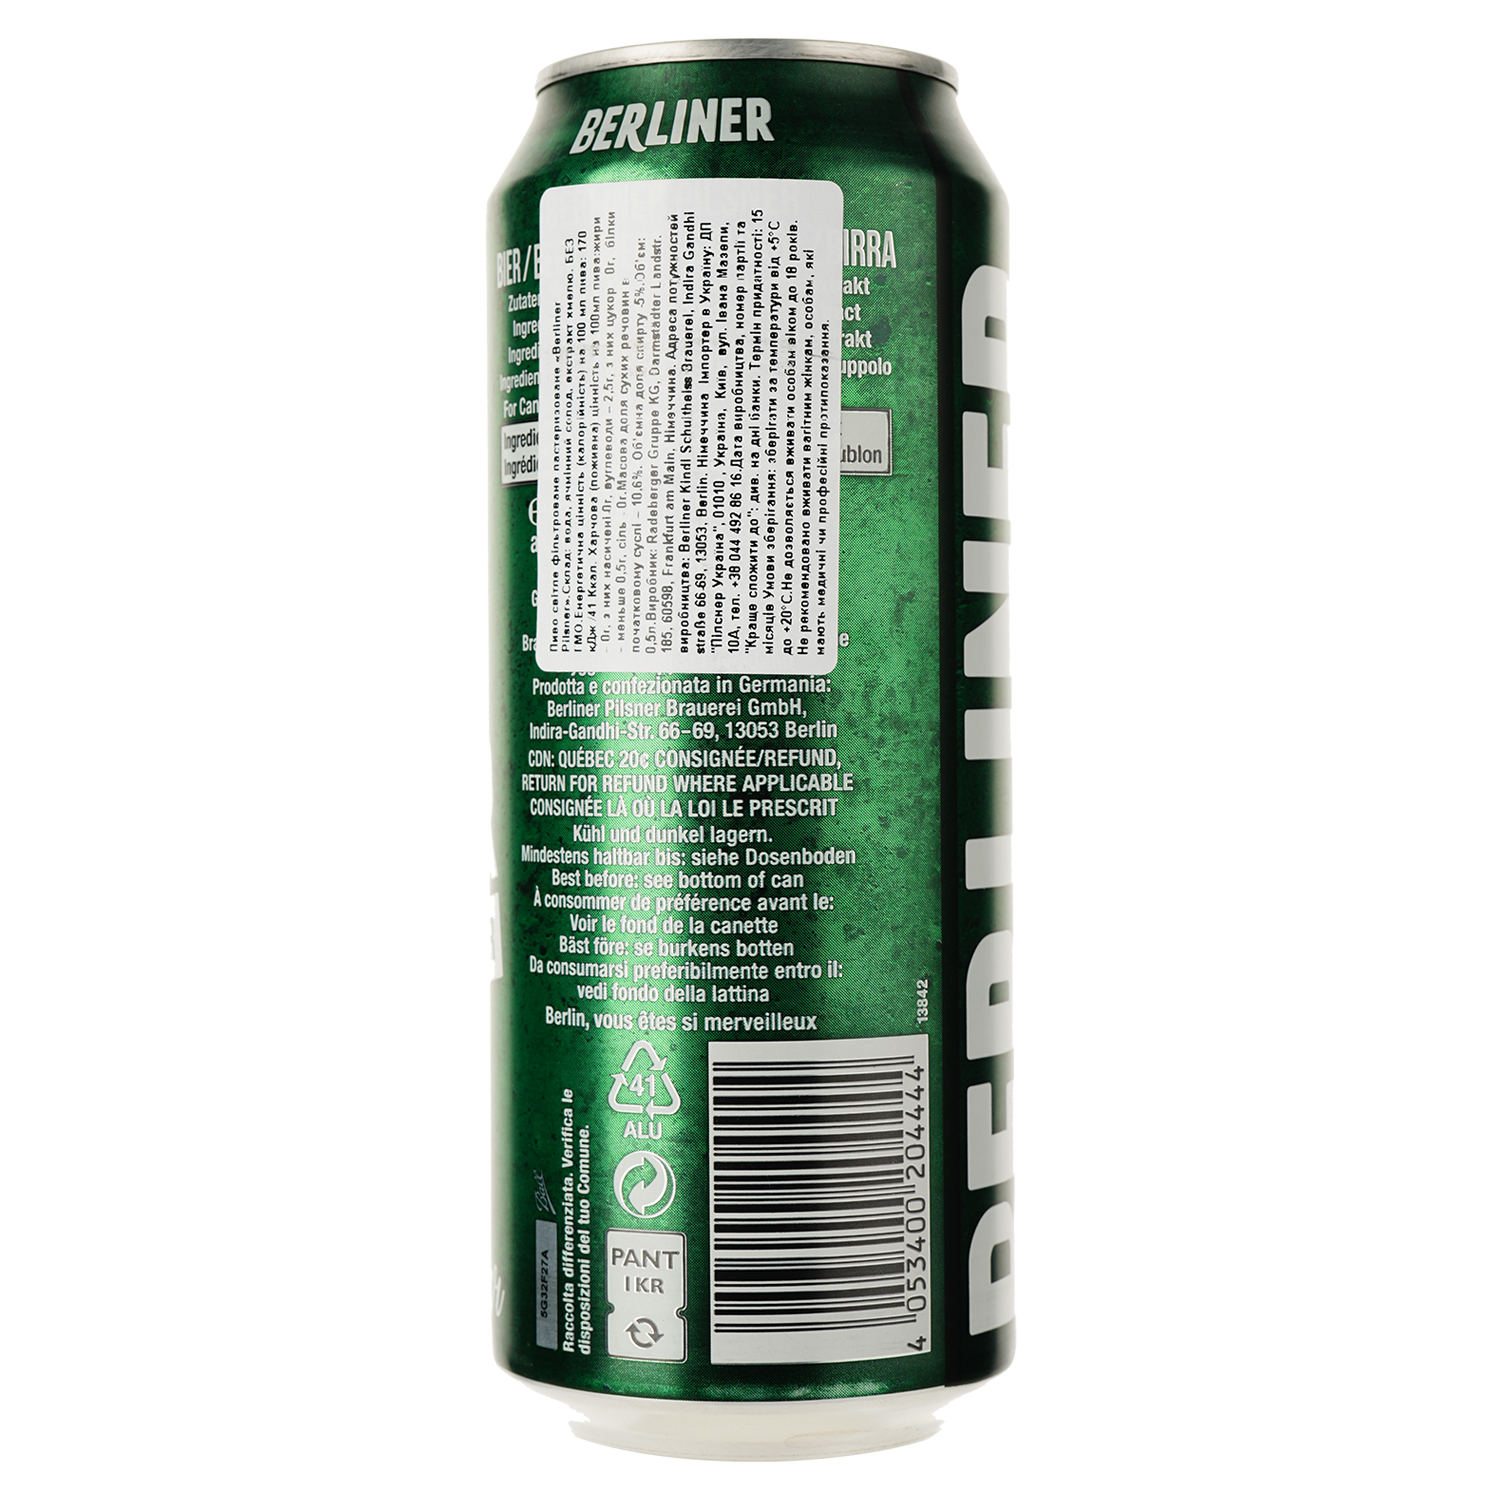 Пиво Berliner Pilsner, светлое, фильтрованное, 4,8%, ж/б, 0,5 л - фото 2